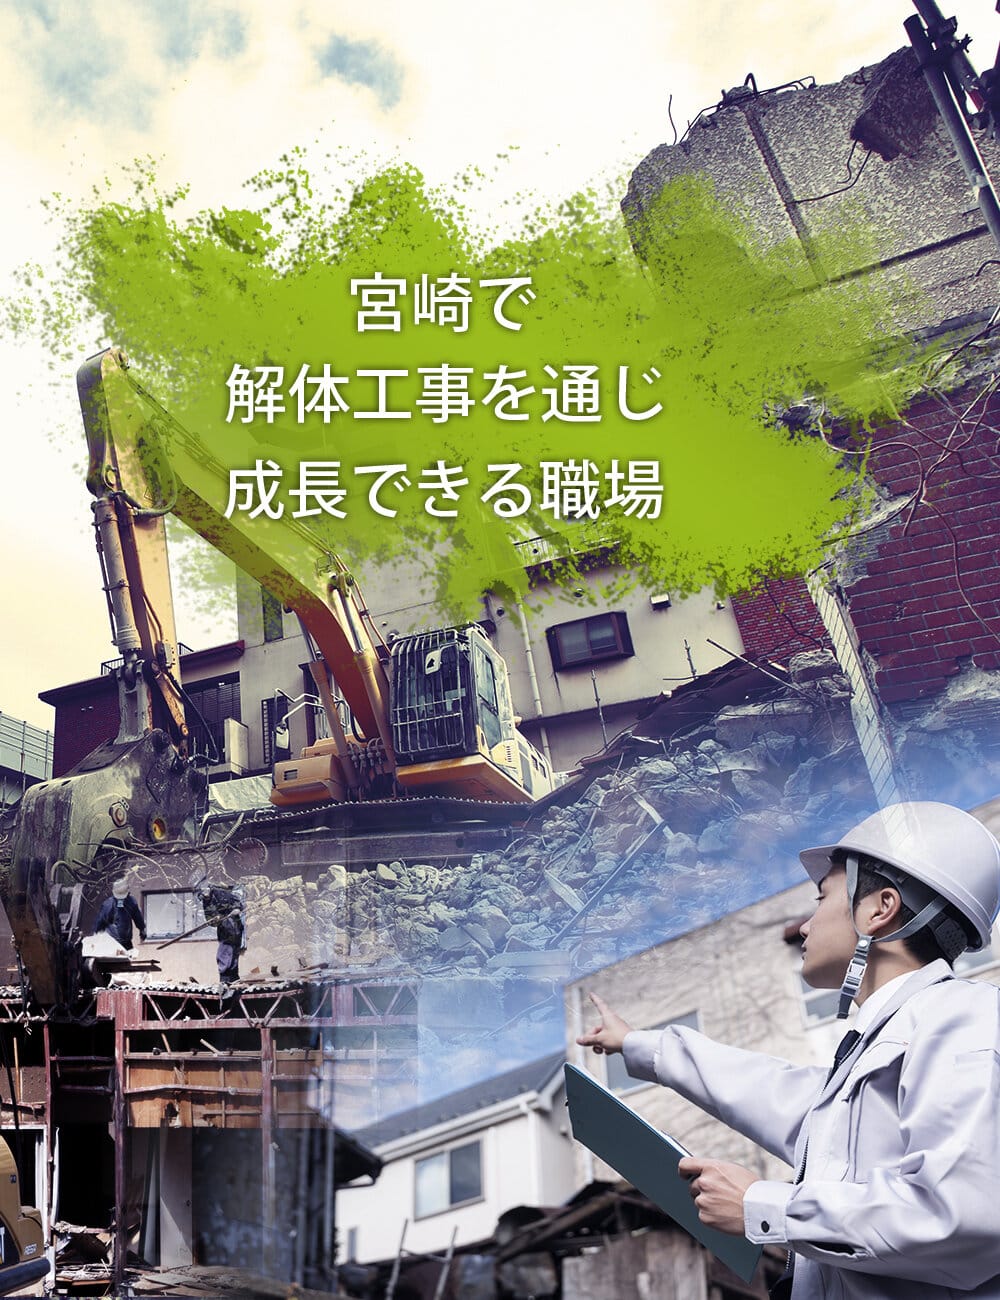 宮崎で解体工事を通じ成長できる職場